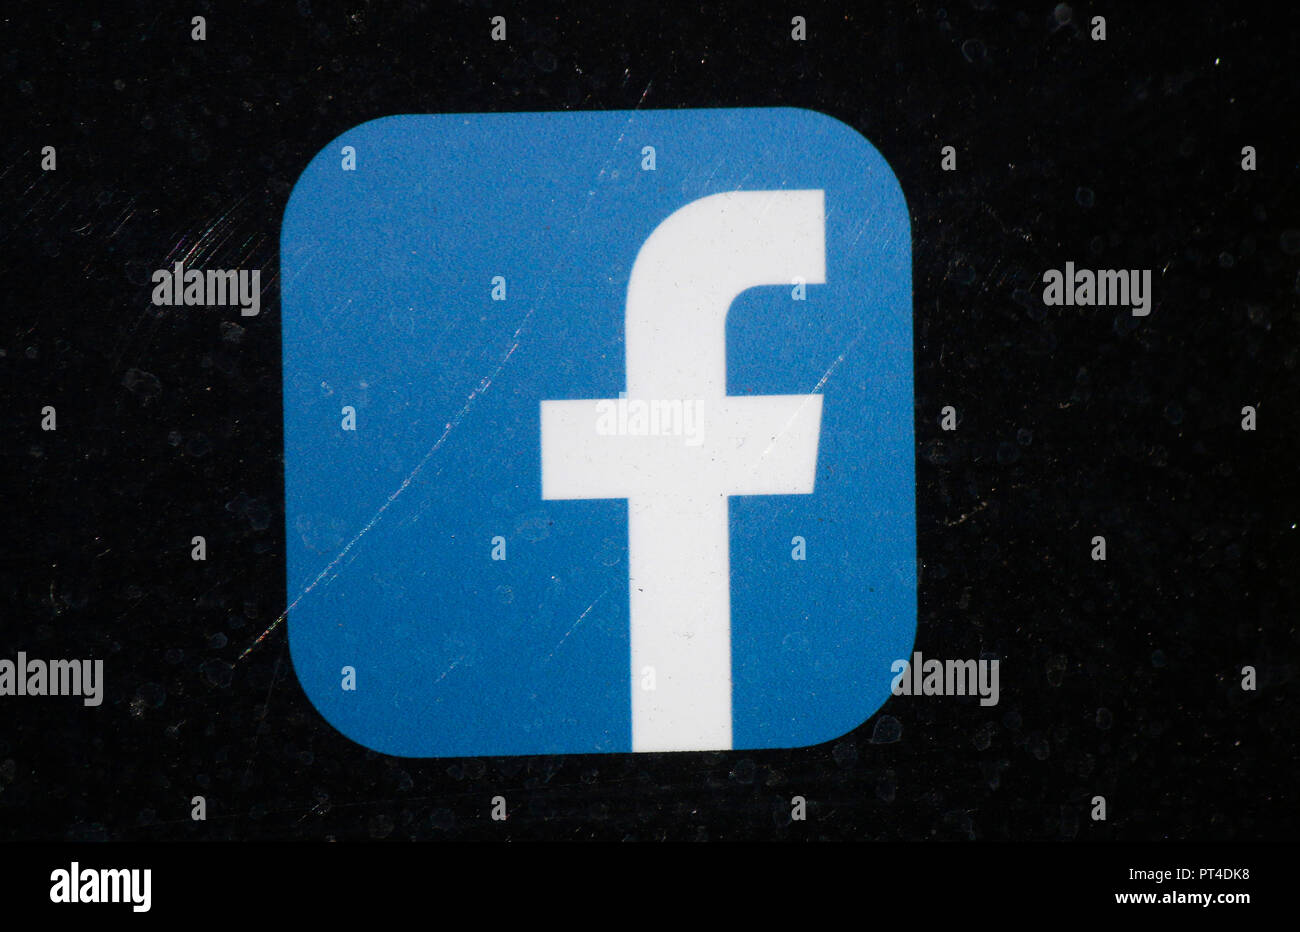 Das Logo der Marke/das Logo der Marke "Facebook", Dublin, Irland / Irland (nur fuer redaktionelle Verwendung. Keine Werbung. Referenzdatenbank: h Stockfoto